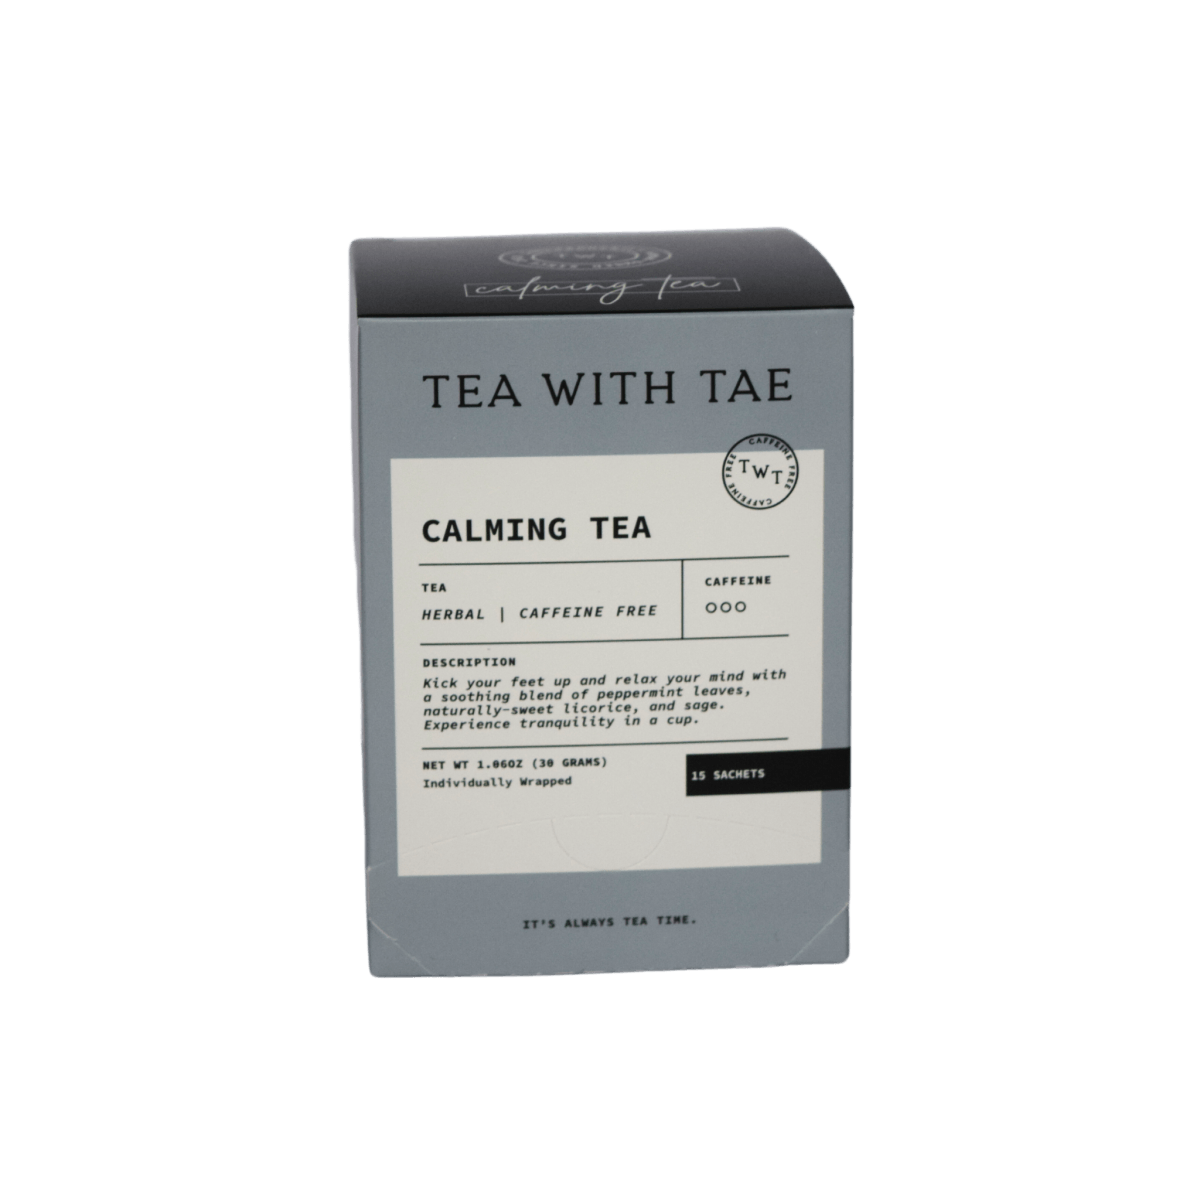 Calming Tea 15-ct. Tea Box - Tea with Tae